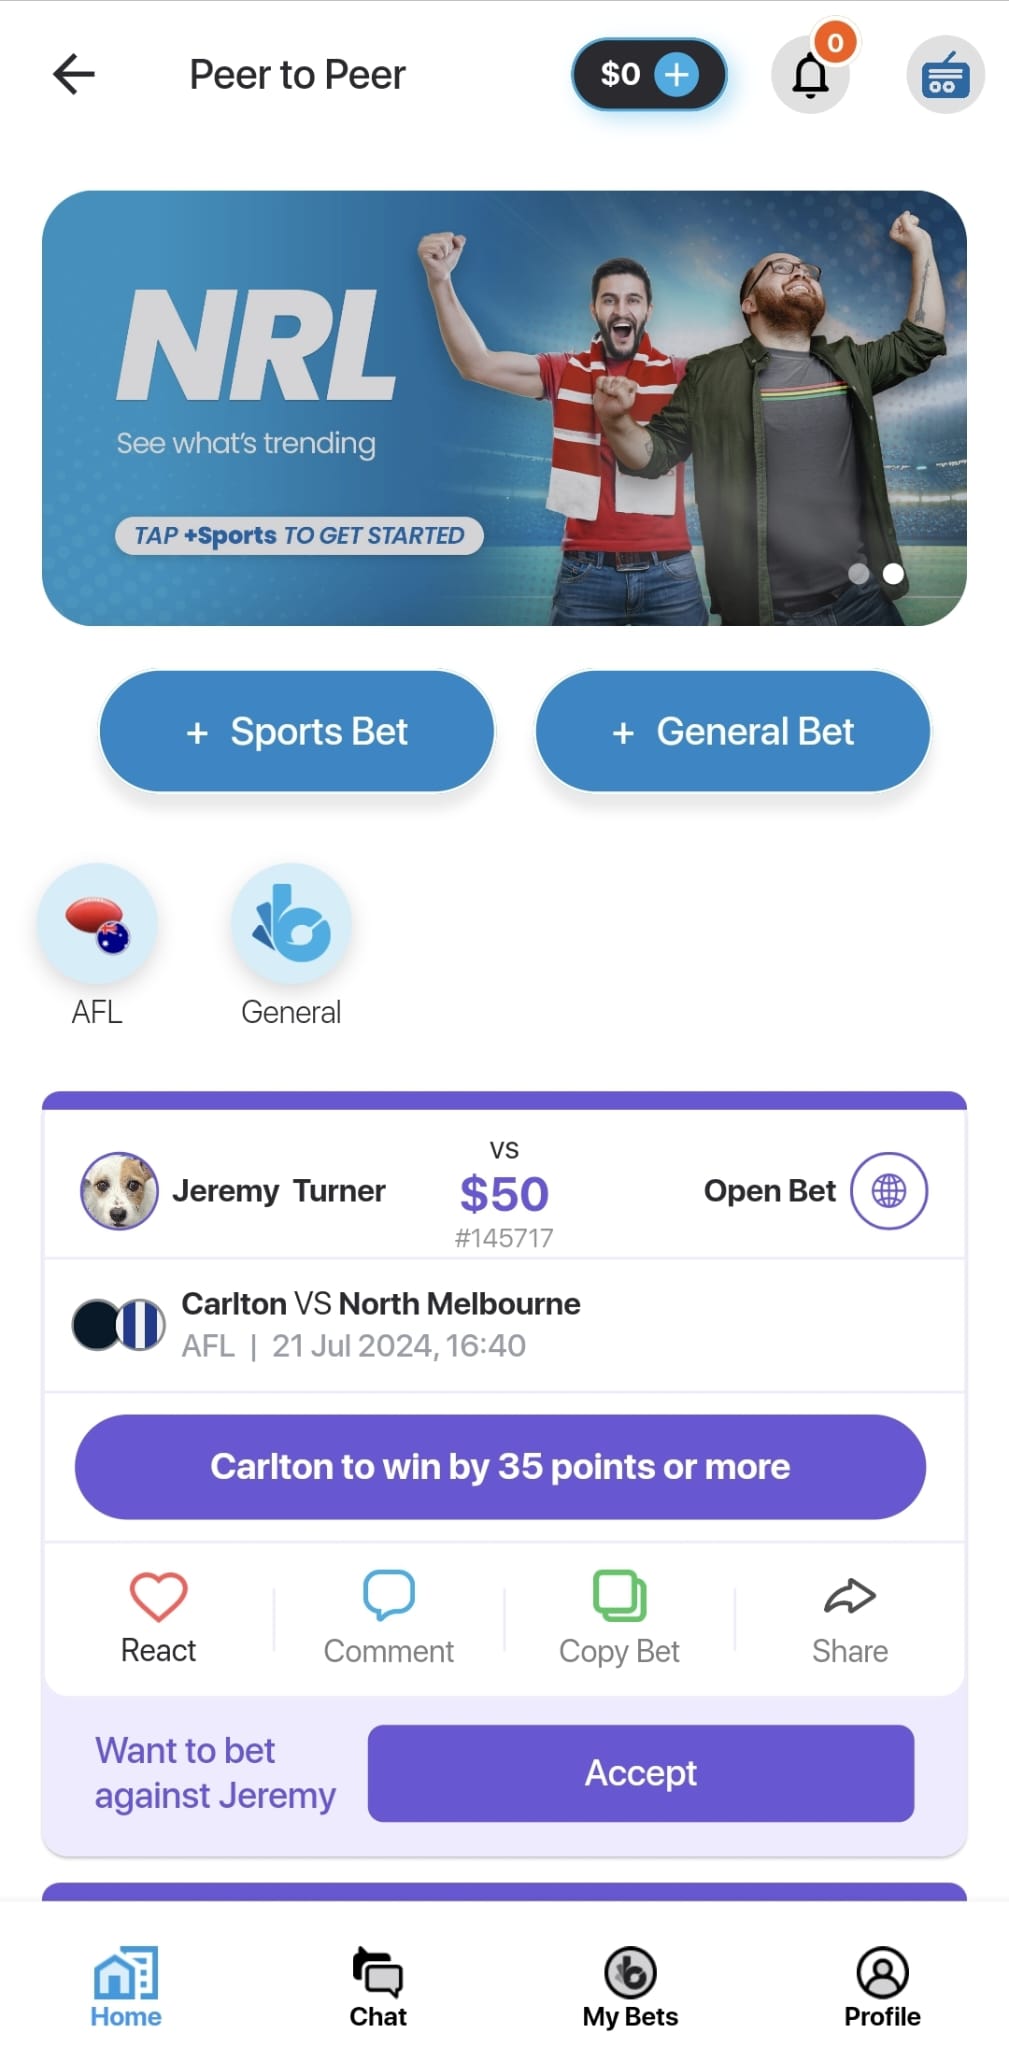 BuddyBet’s peer-to-peer betting feature.